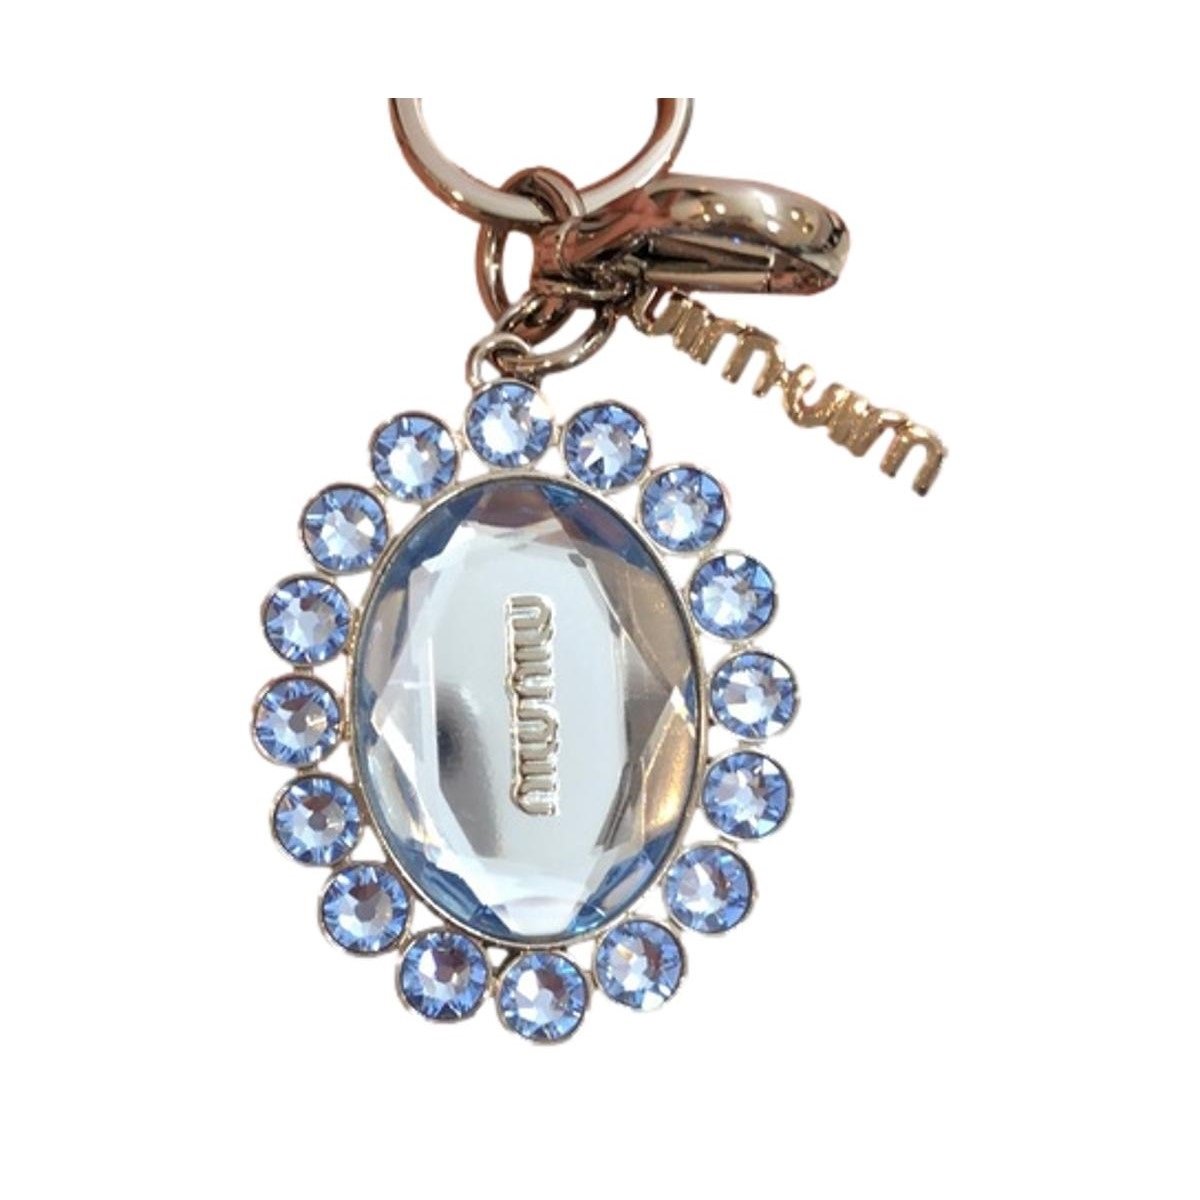 Miu Miu Trick Metallo Oval Crystal Blue Plex Charm Key Chain Key Ring